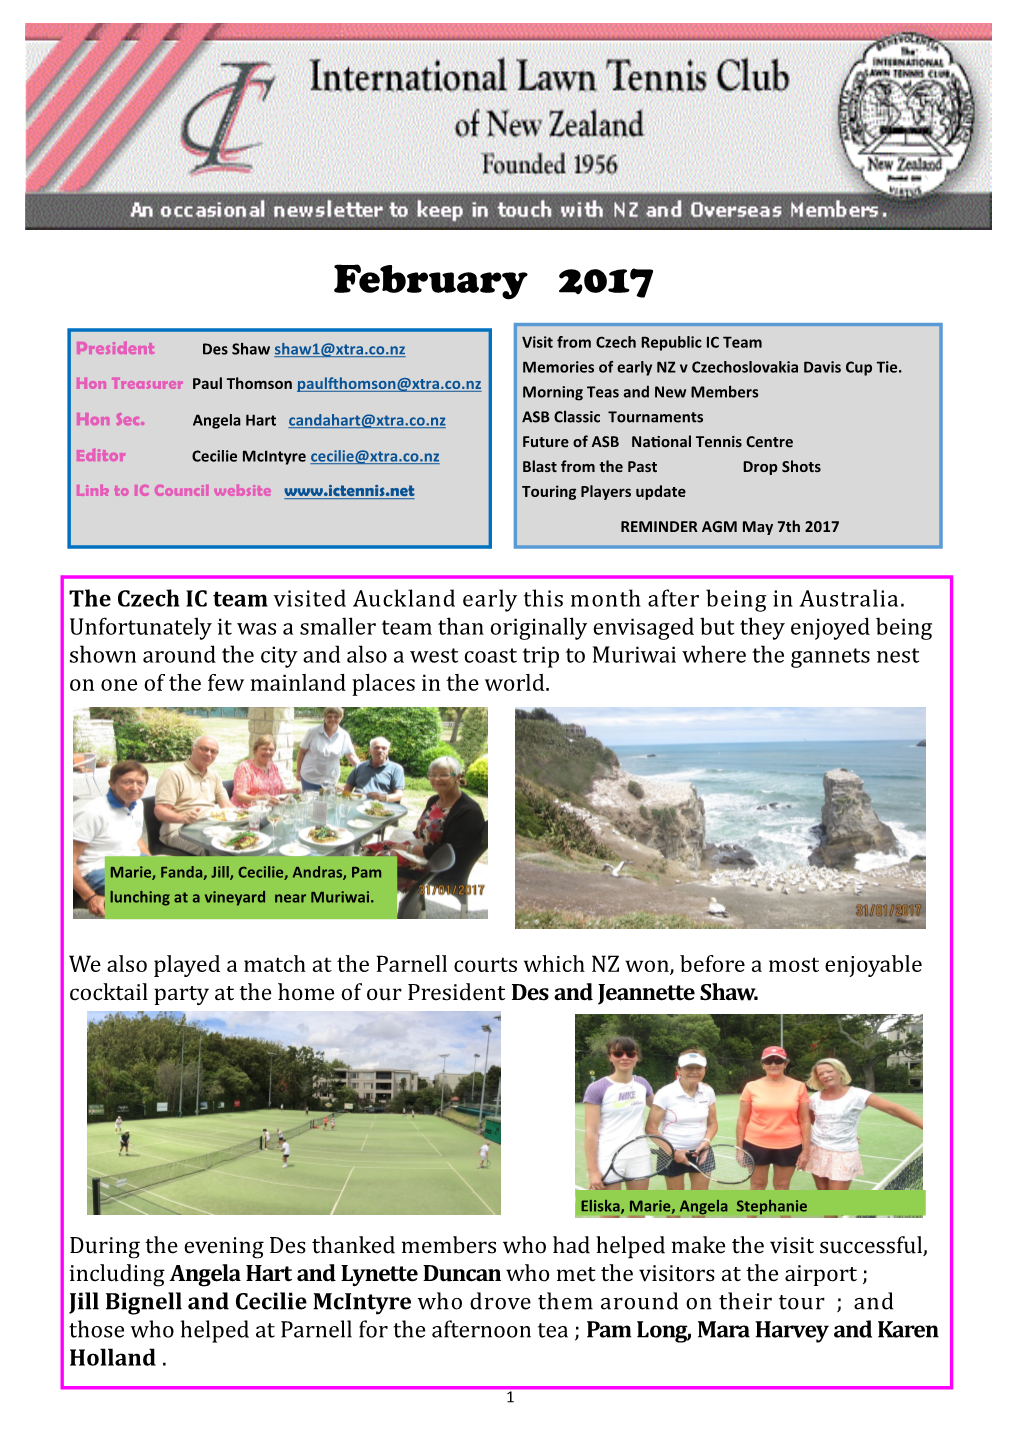 The February Newsletter